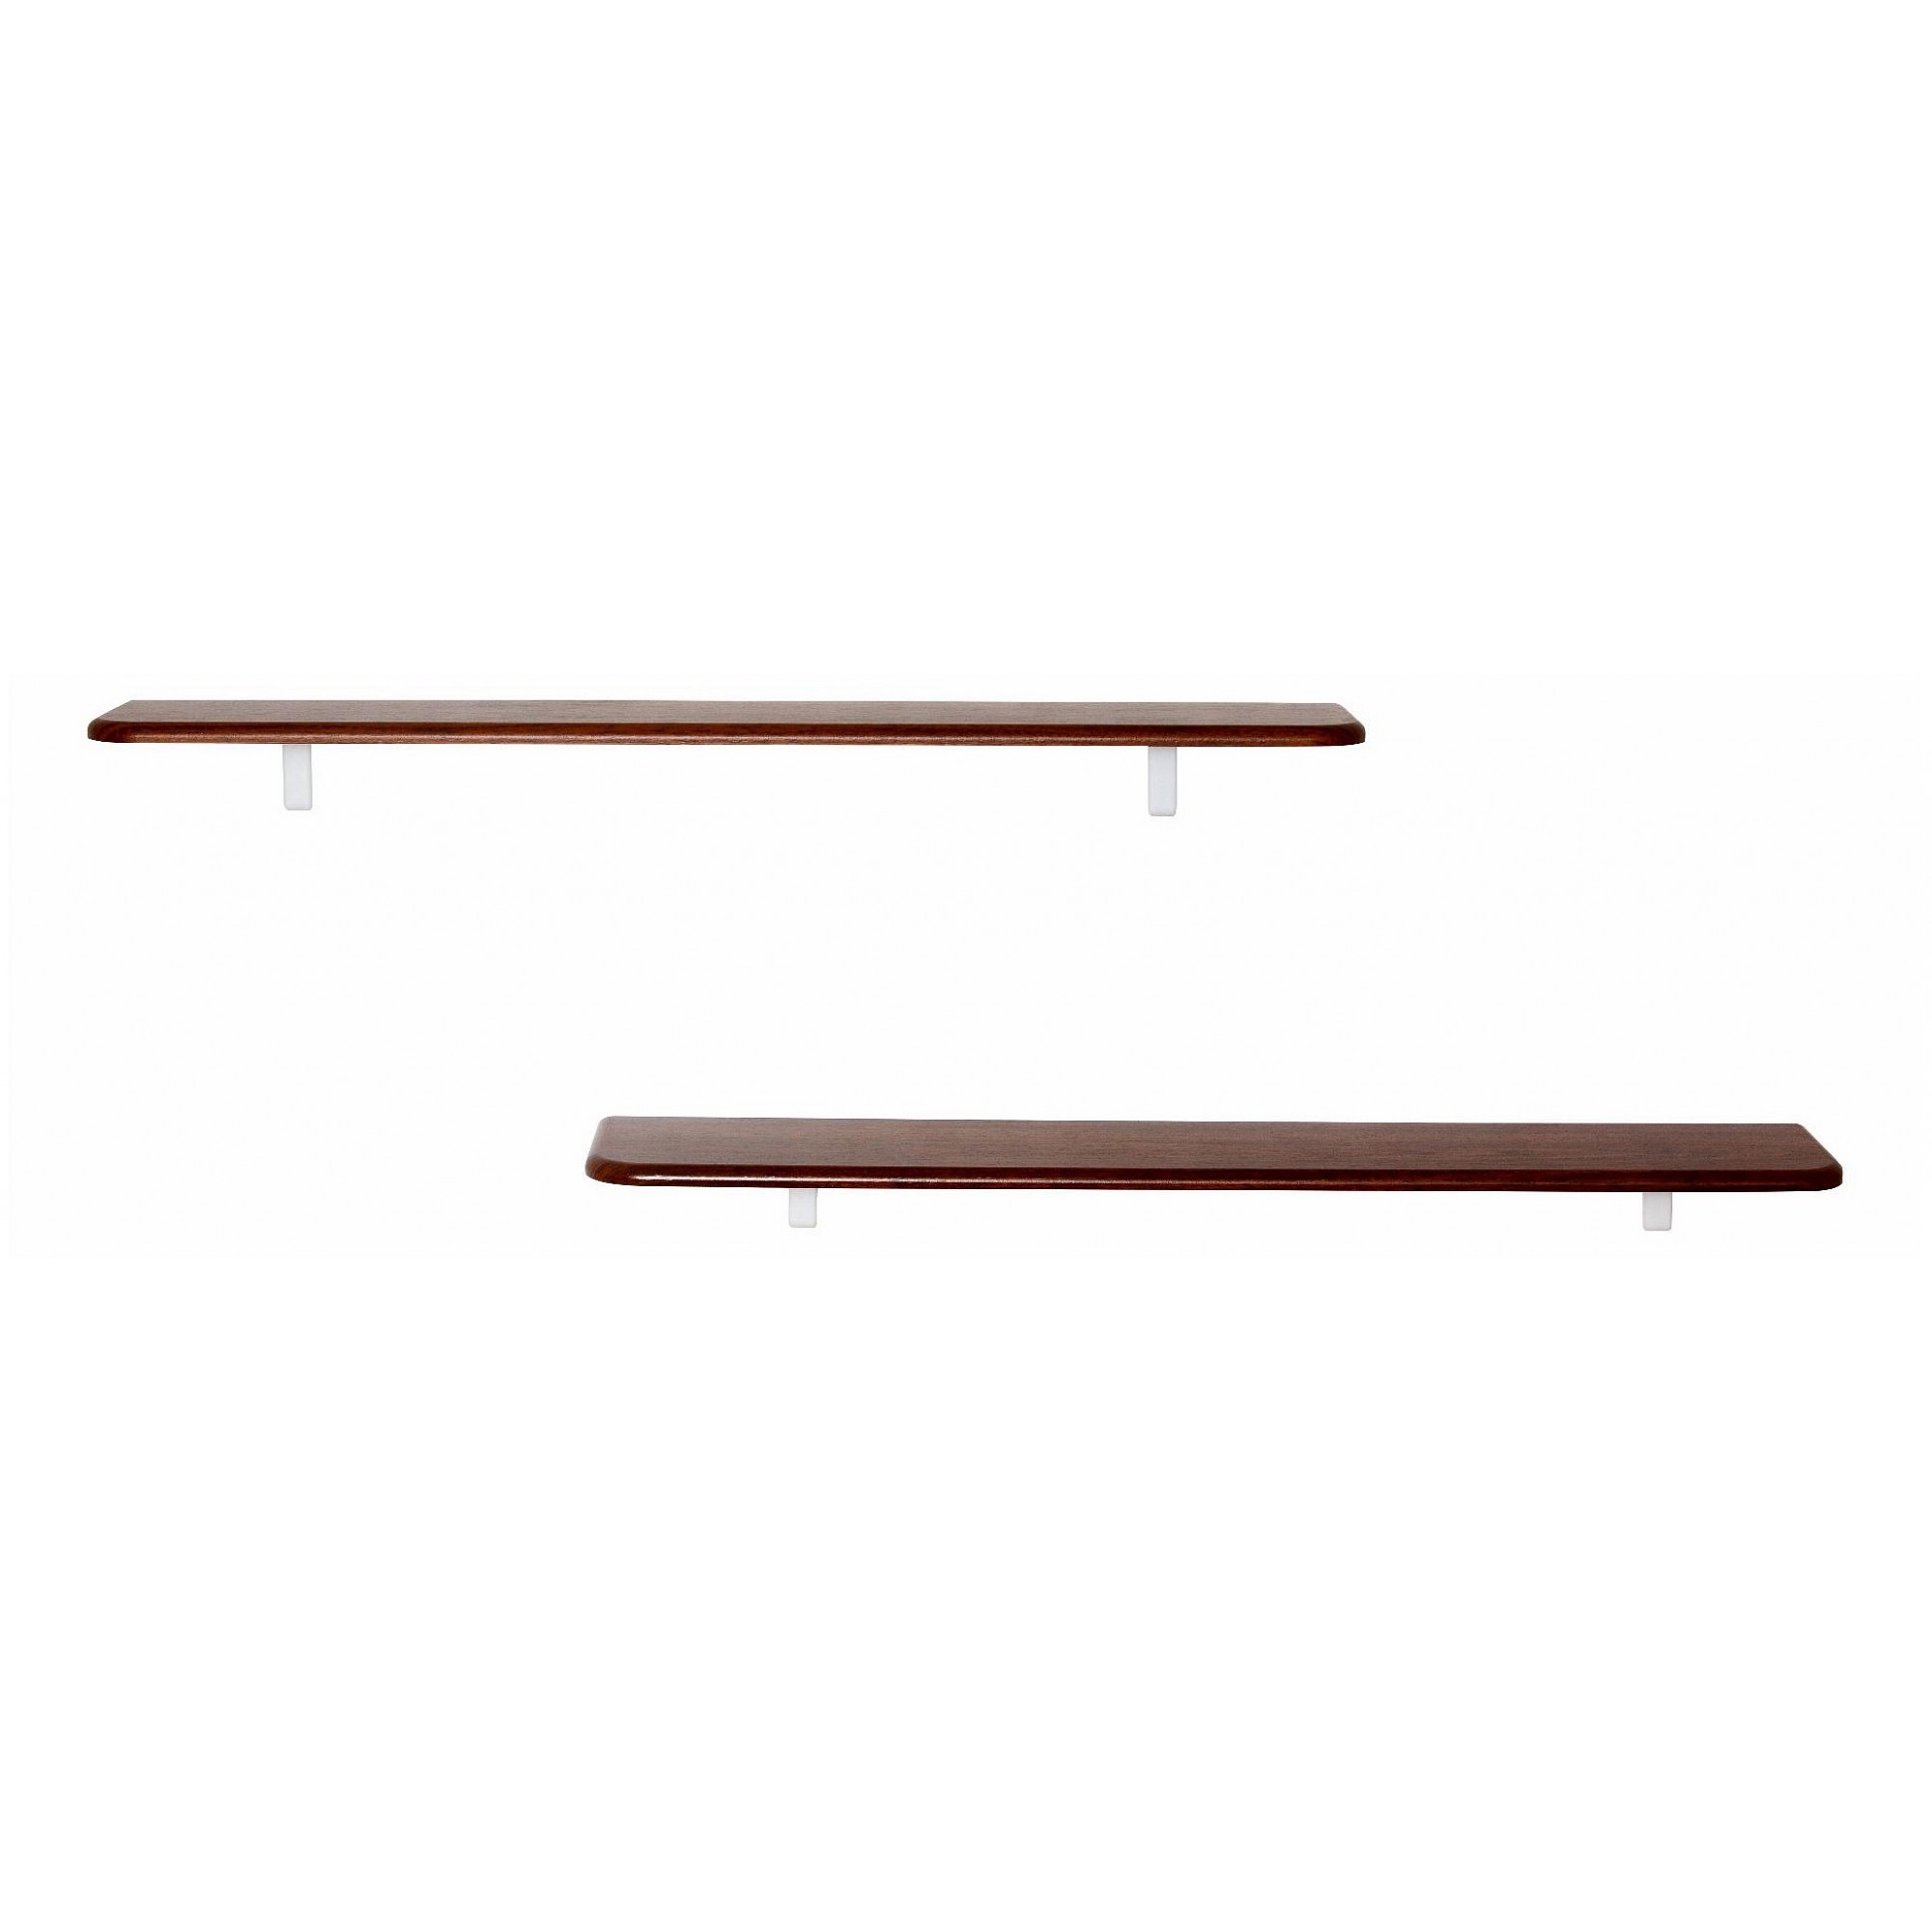 Набор из 2 полок навесных Сочи 1020 древесина коричневая нейтральная орех 1020x185x16(KLF_8664029803)